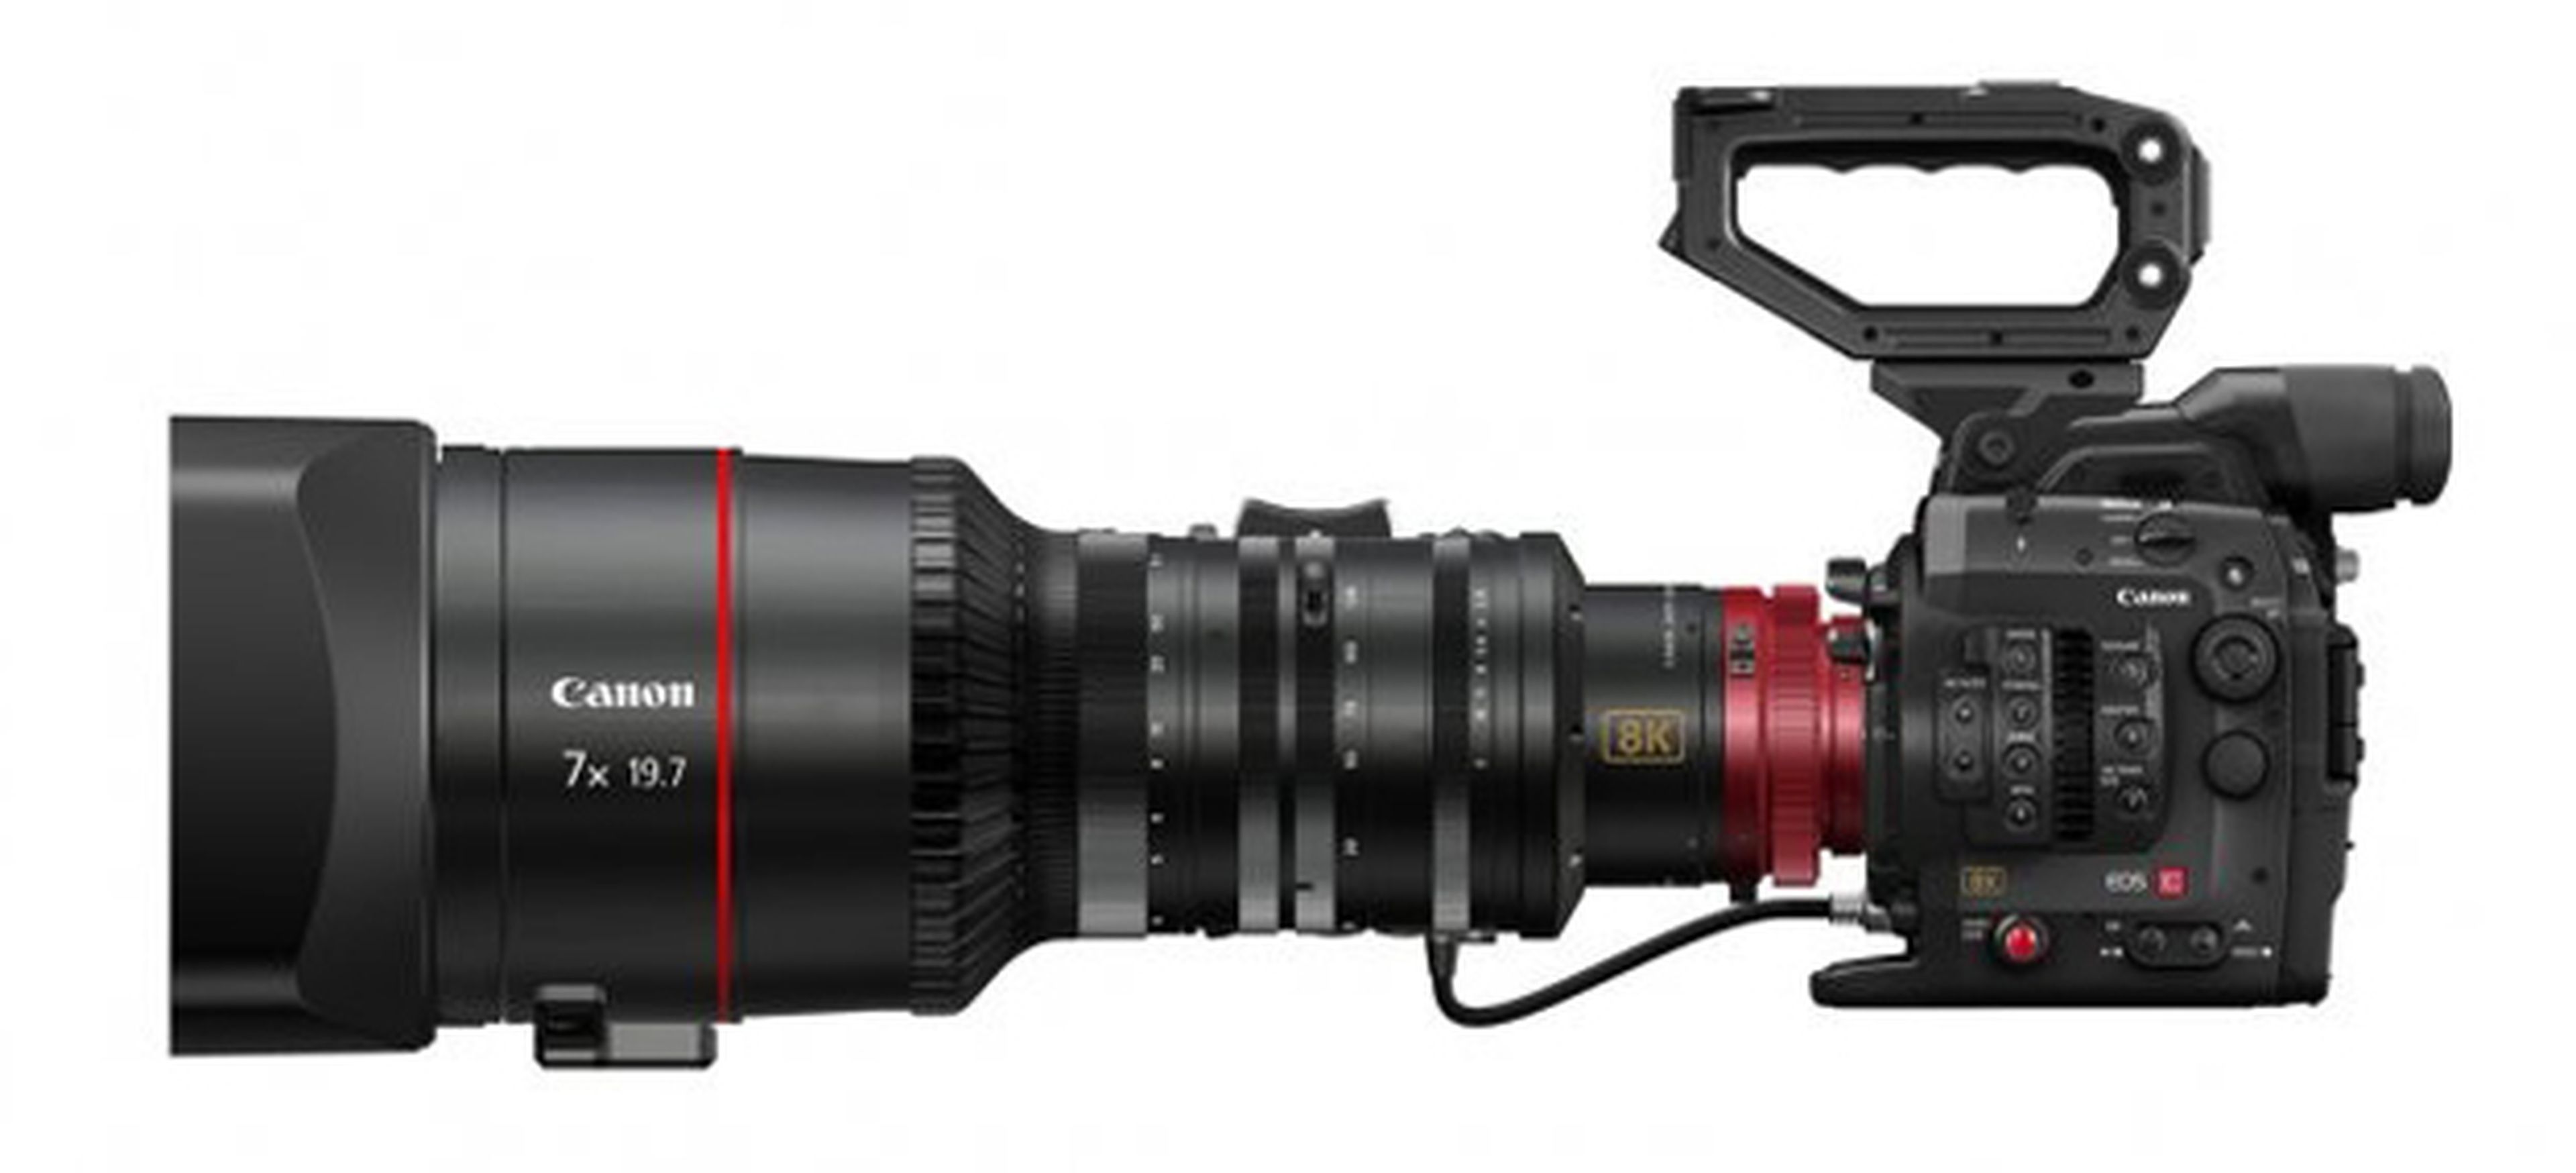 Nueva cámara de vídeo Canon de alta resolución